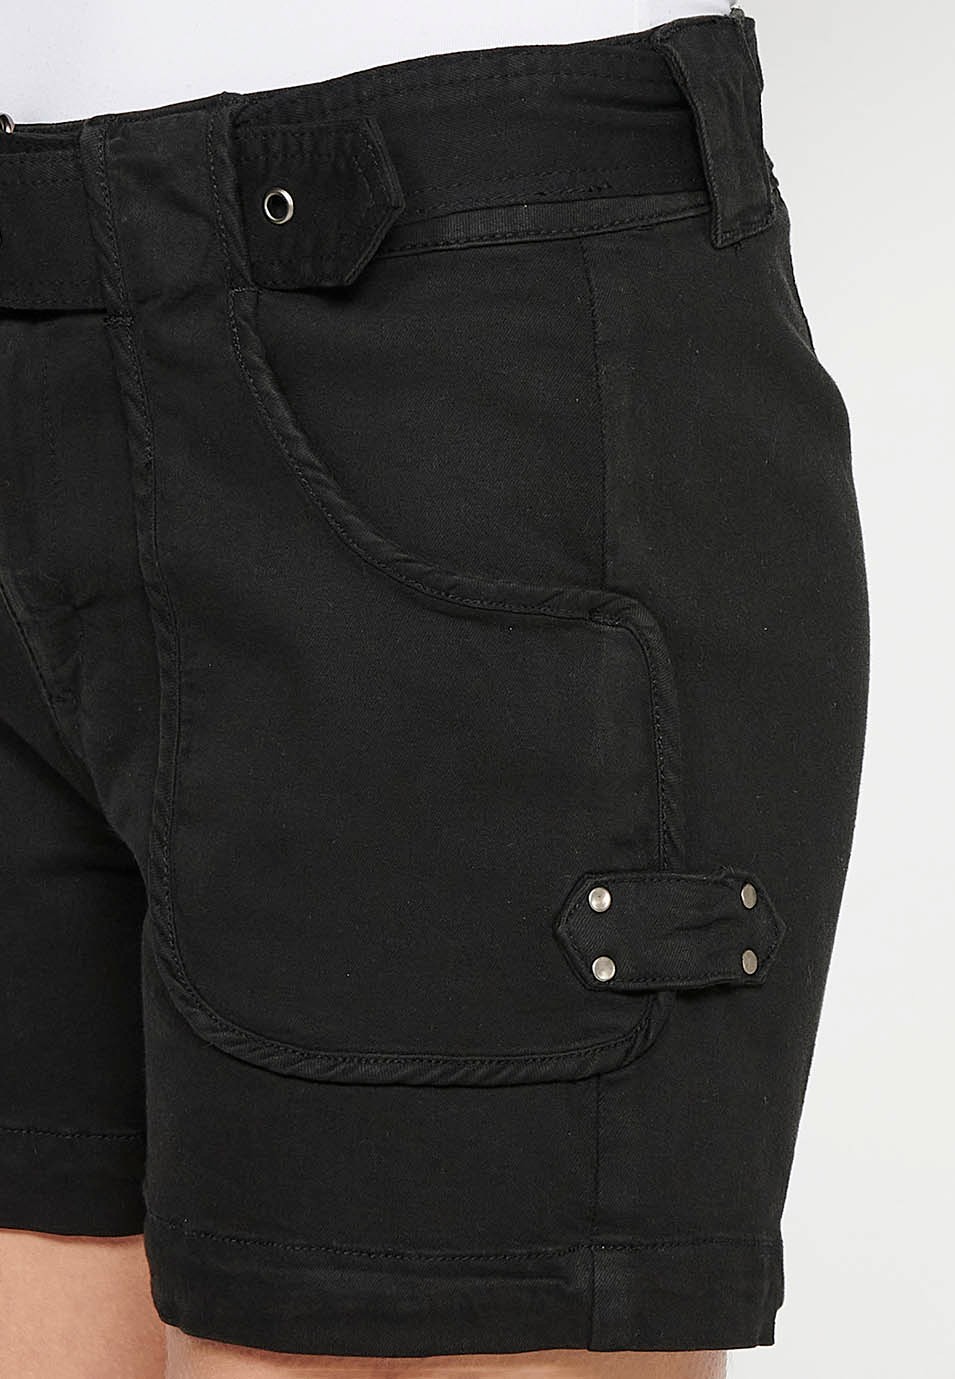 Schwarze Shorts mit Gürtel an der Taille und aufgesetzten Taschen für Damen 8